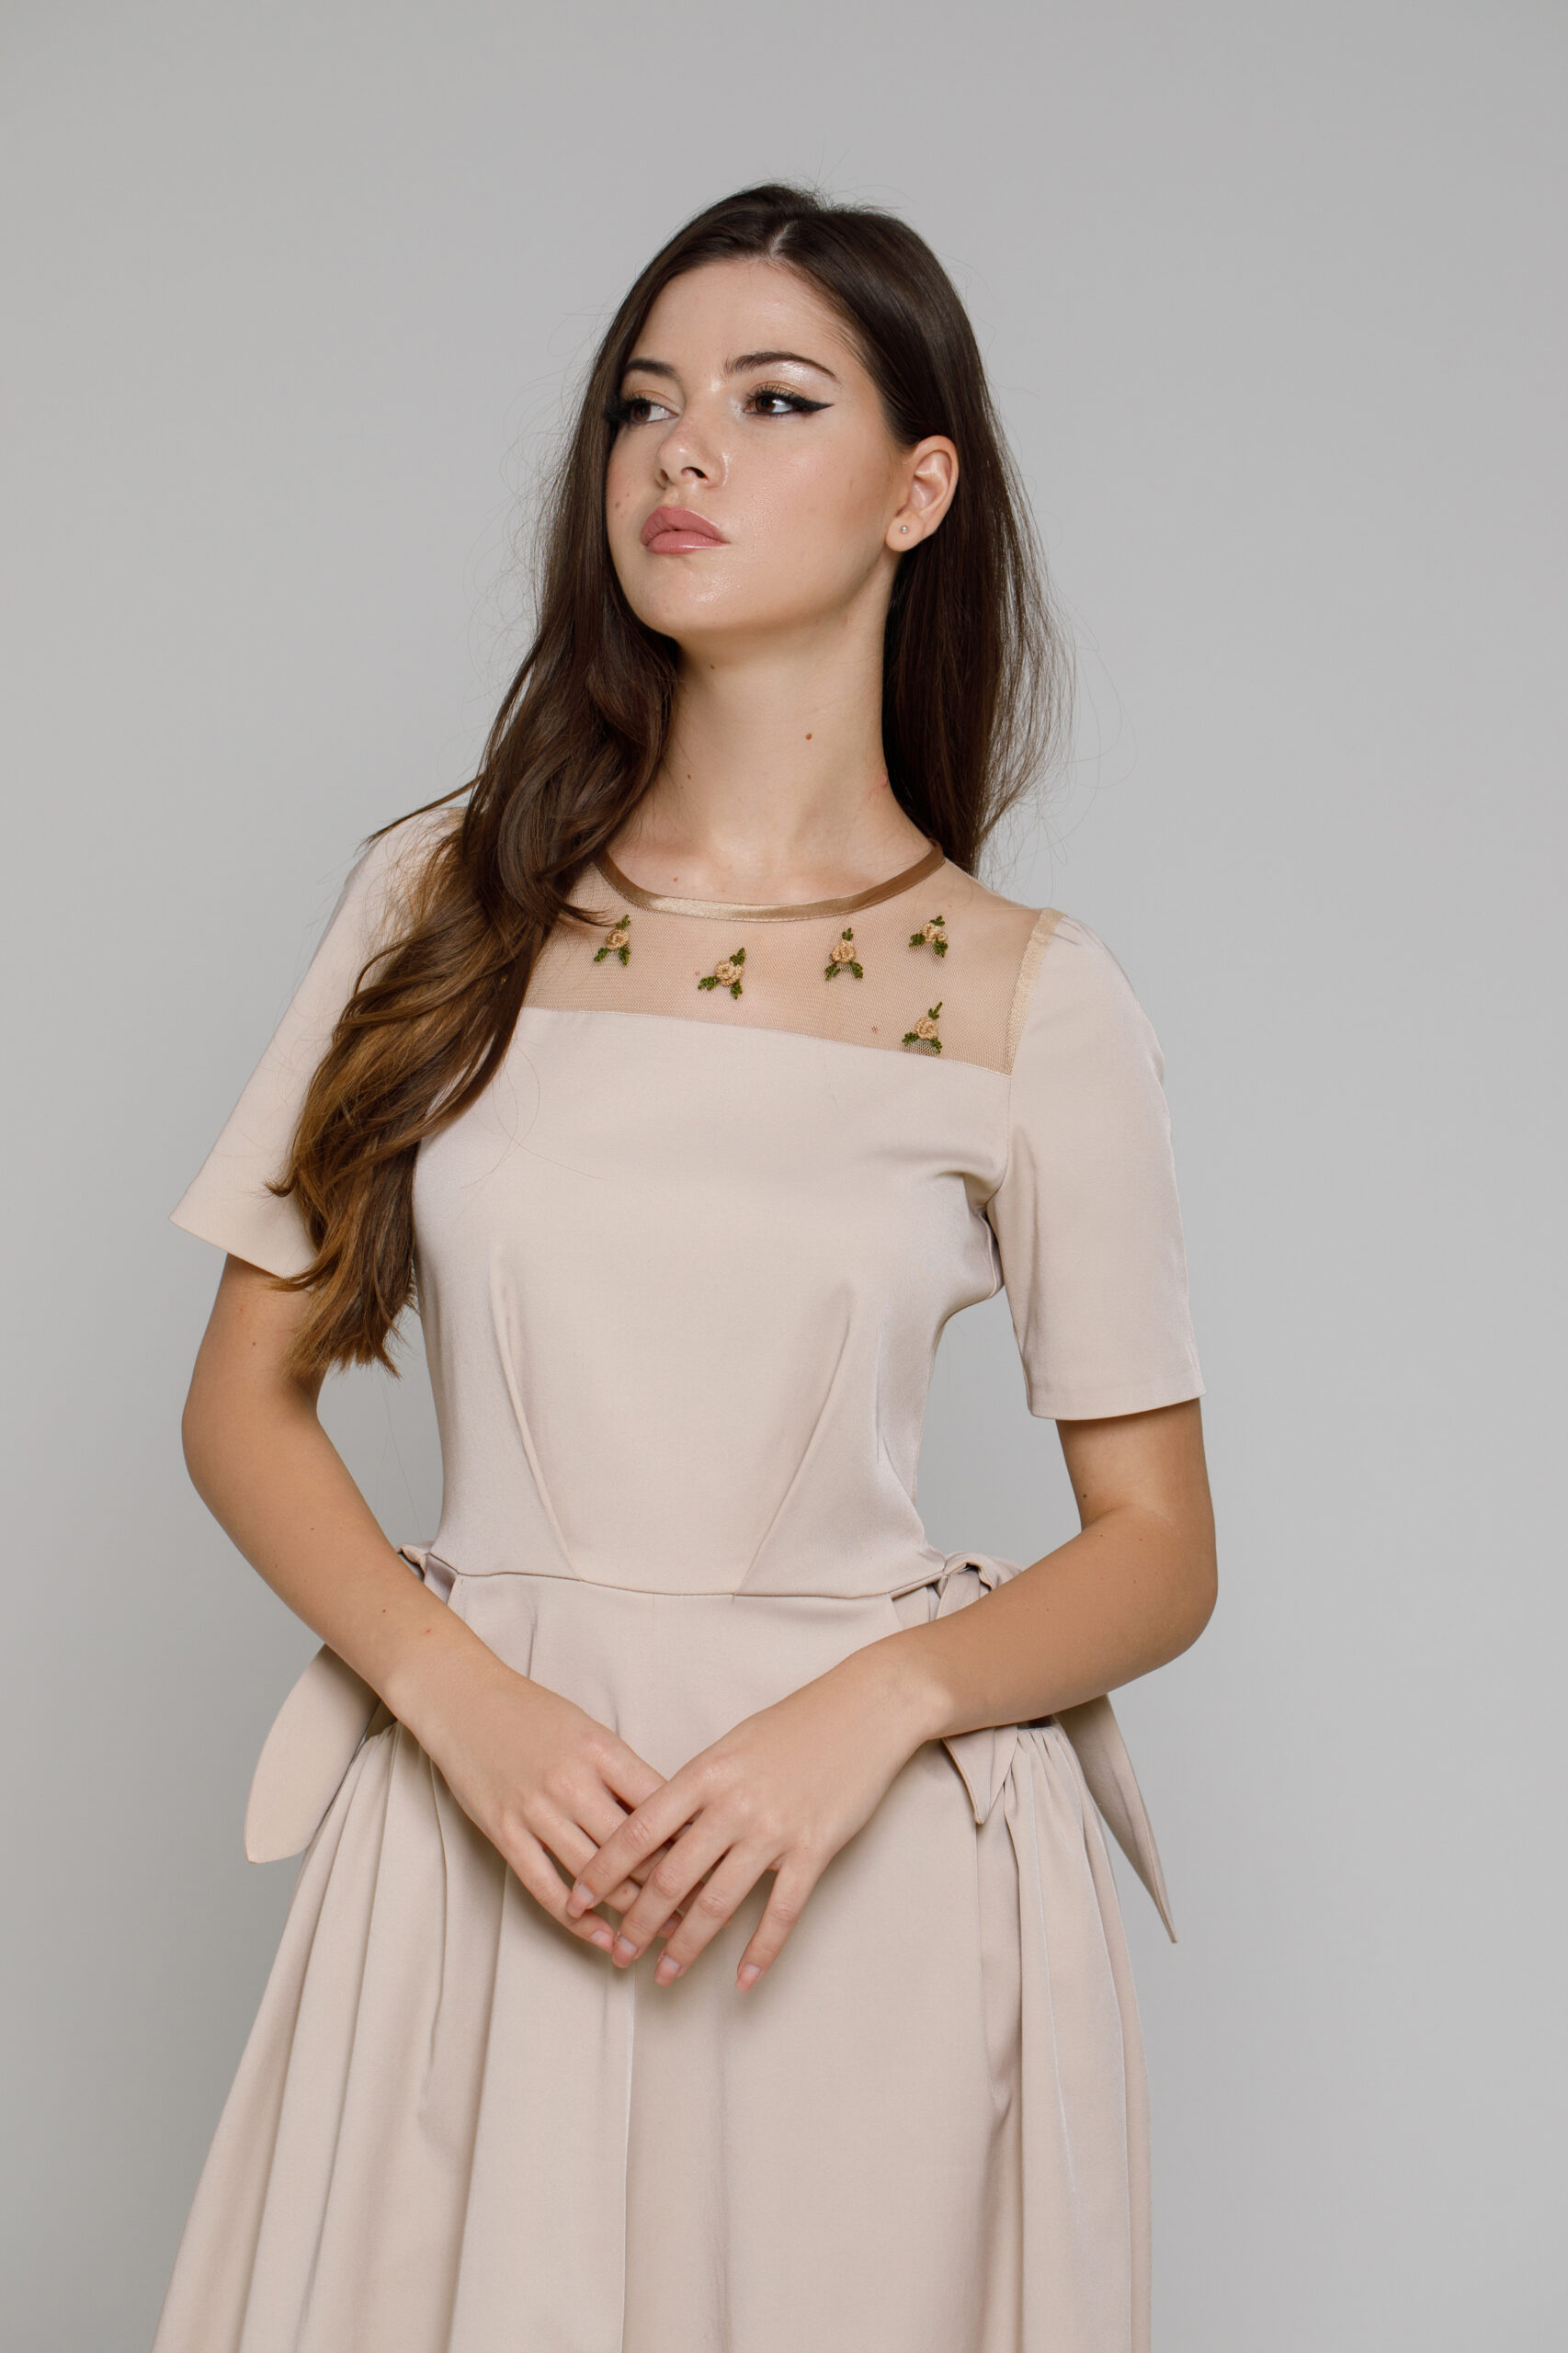 ALVARA beige dress. Natural fabrics, original design, handmade embroidery